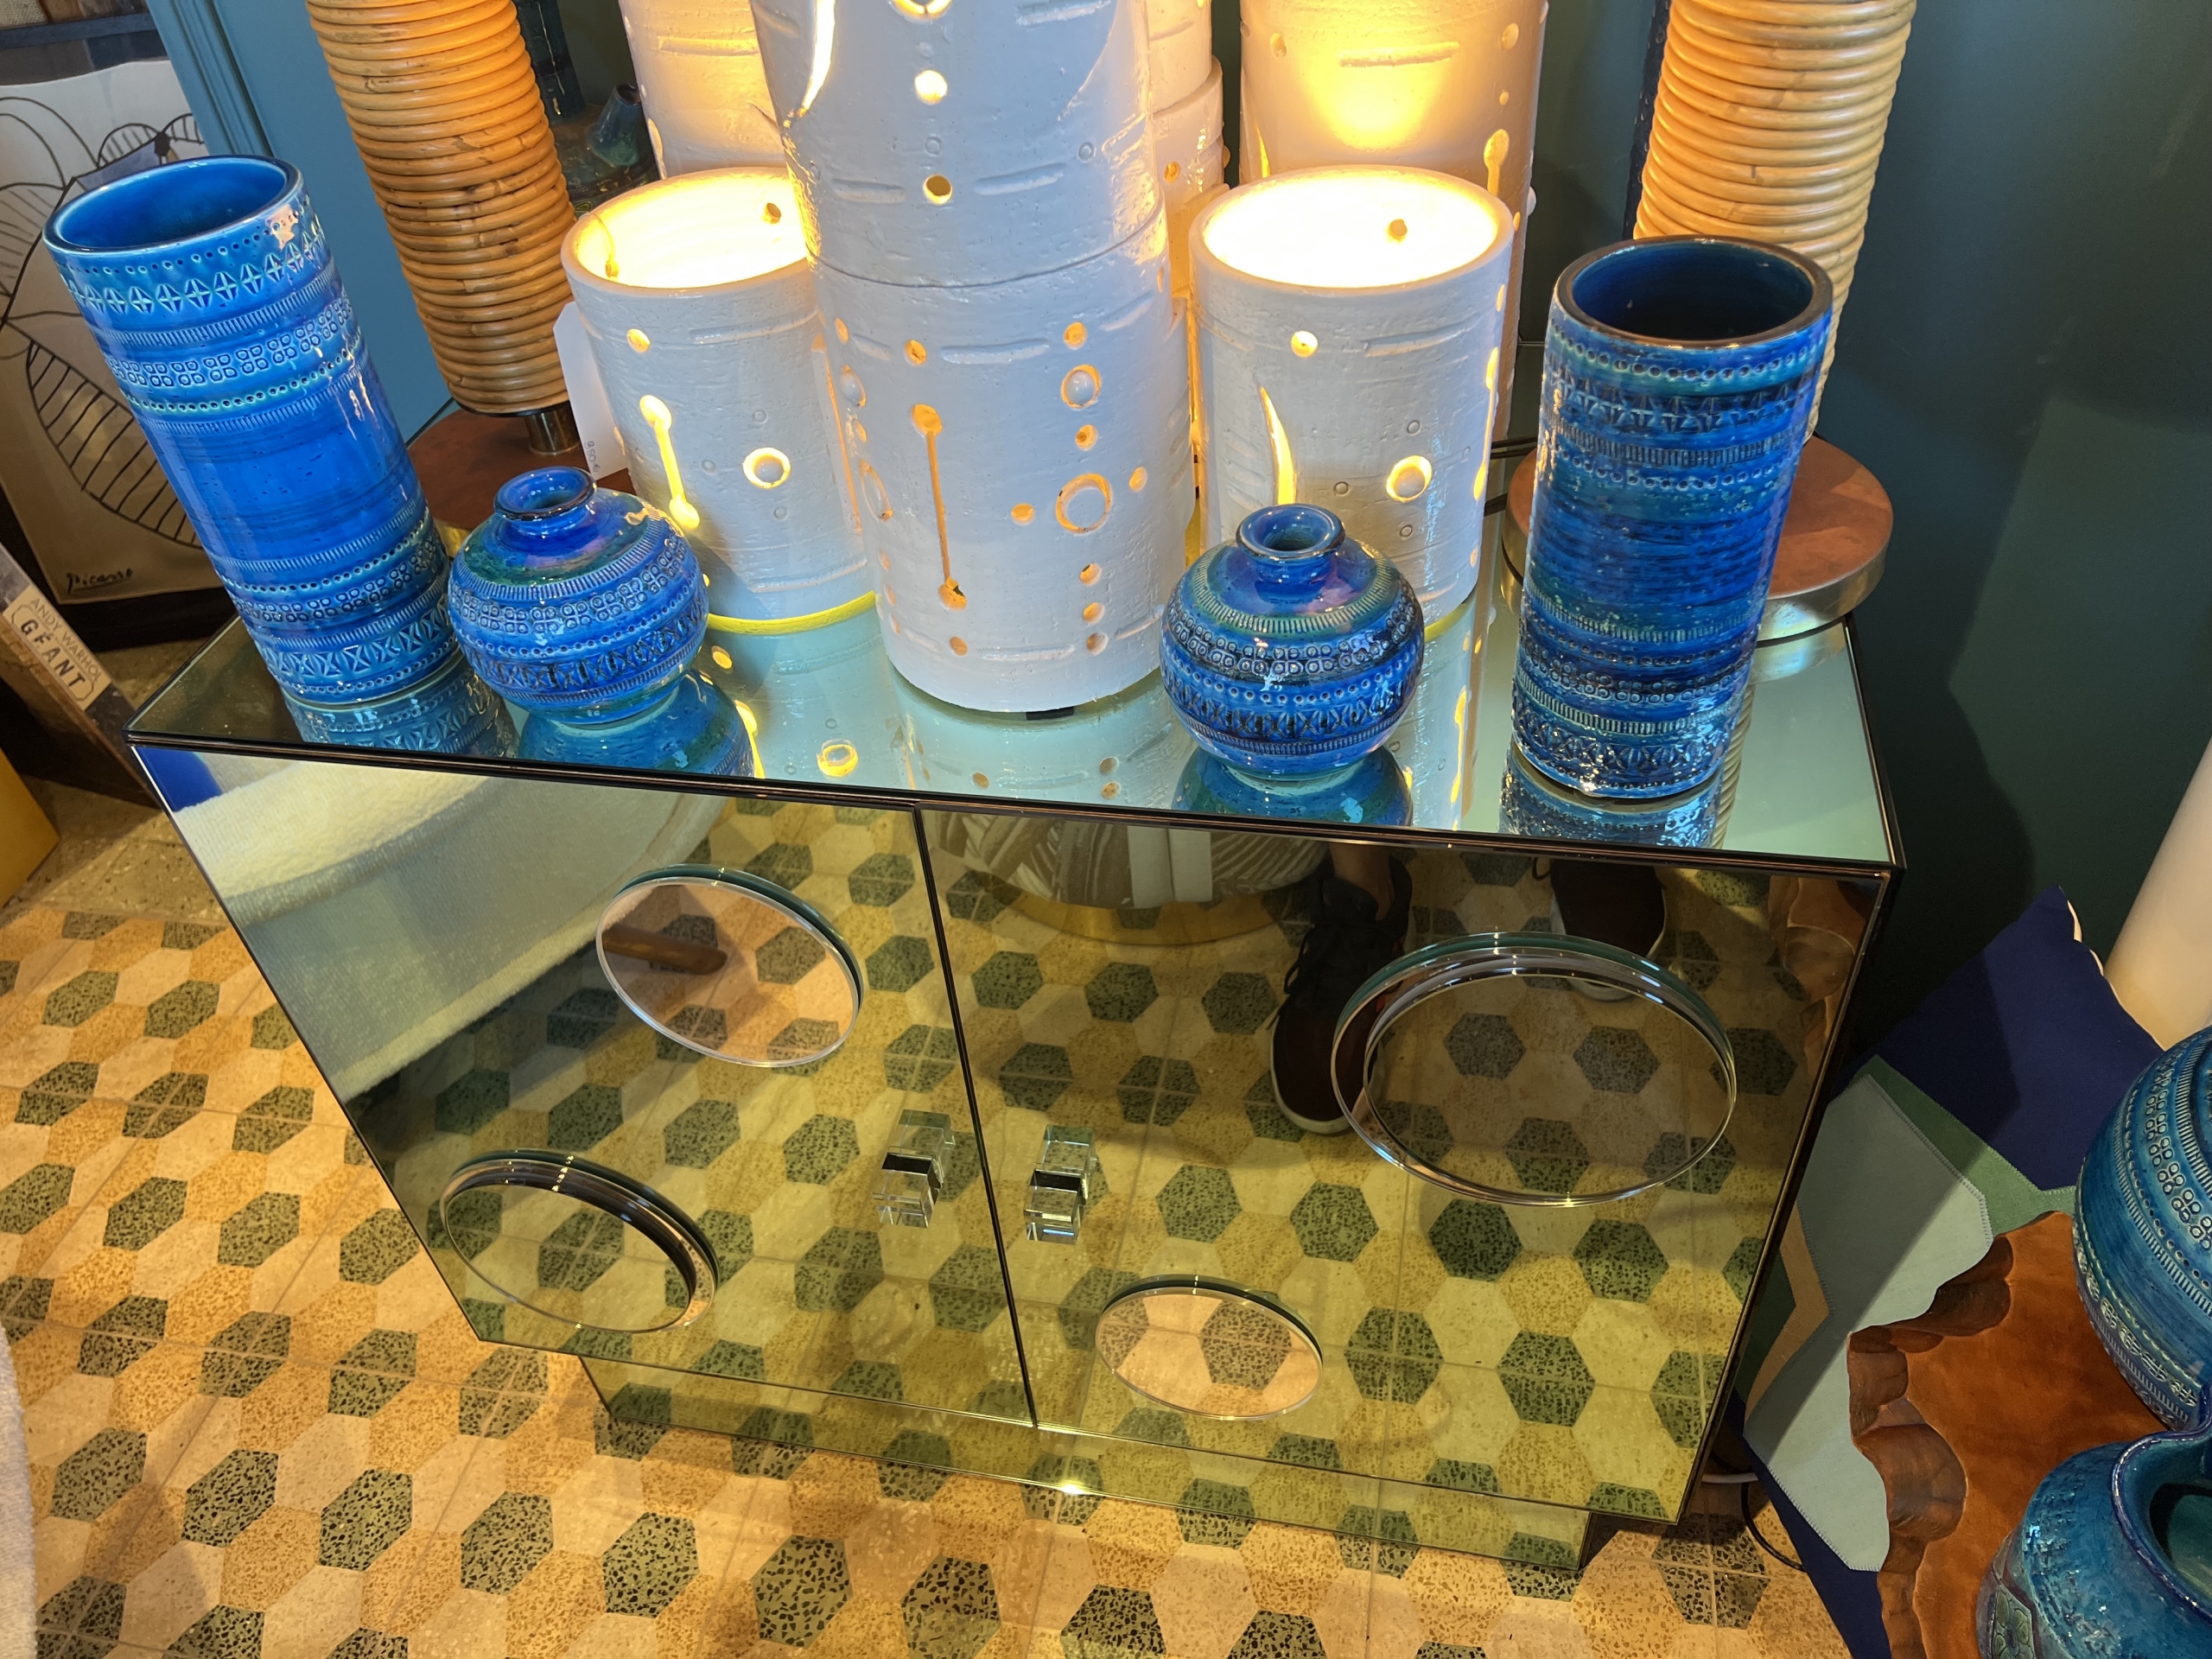 glass of murano chest of drawers⎮glass of murano furniture⎮lacquered murano glass ⎮handmade in Italy⎮handmade murano glass chest of drawers